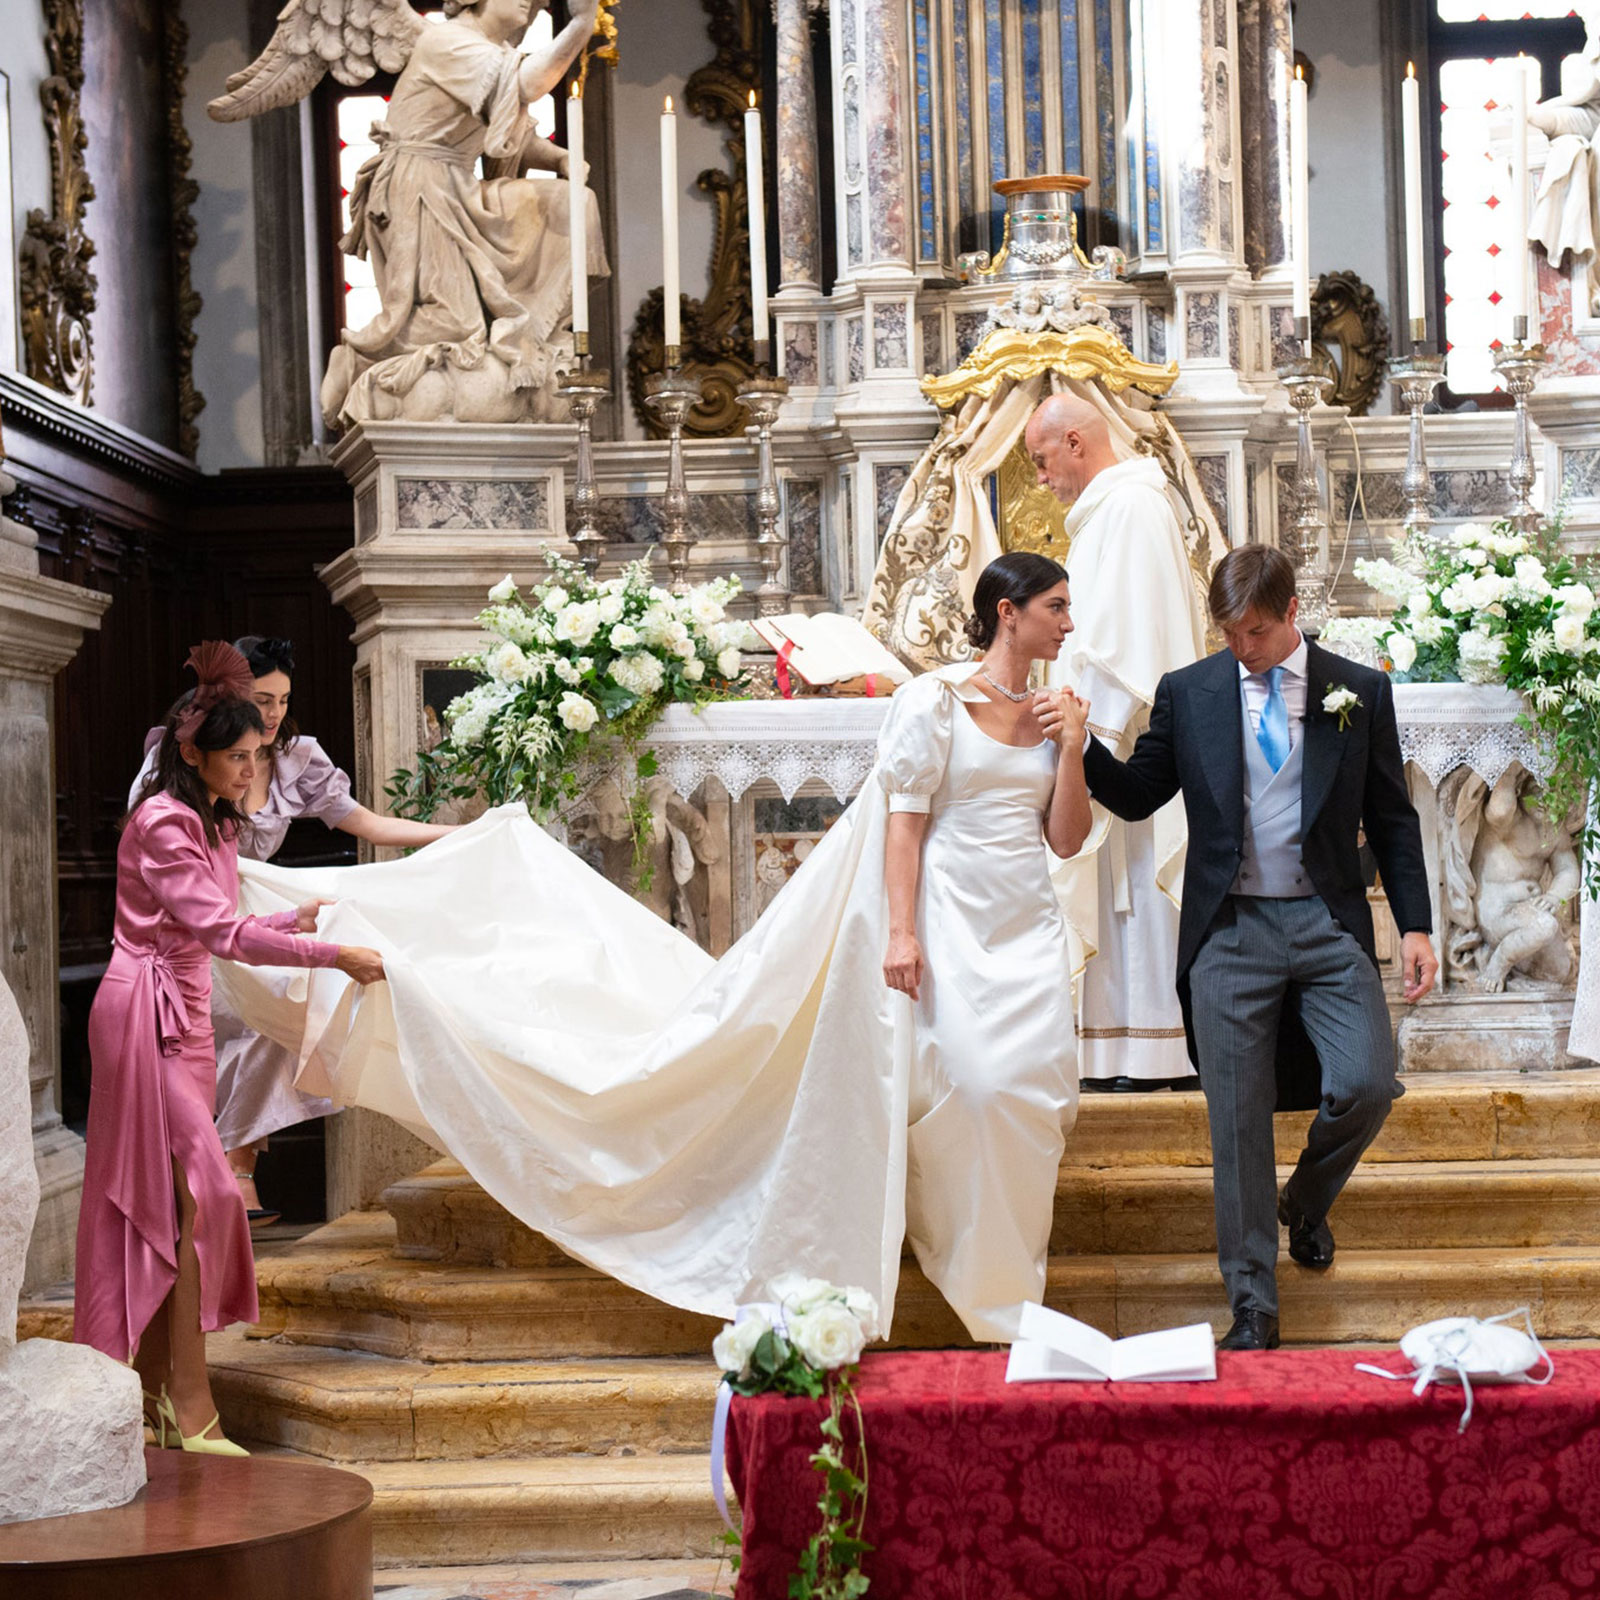 Il Matrimonio di Silvia Bortolotto e Giorgio Mondini a Venezia organizzato da The Wedding Club